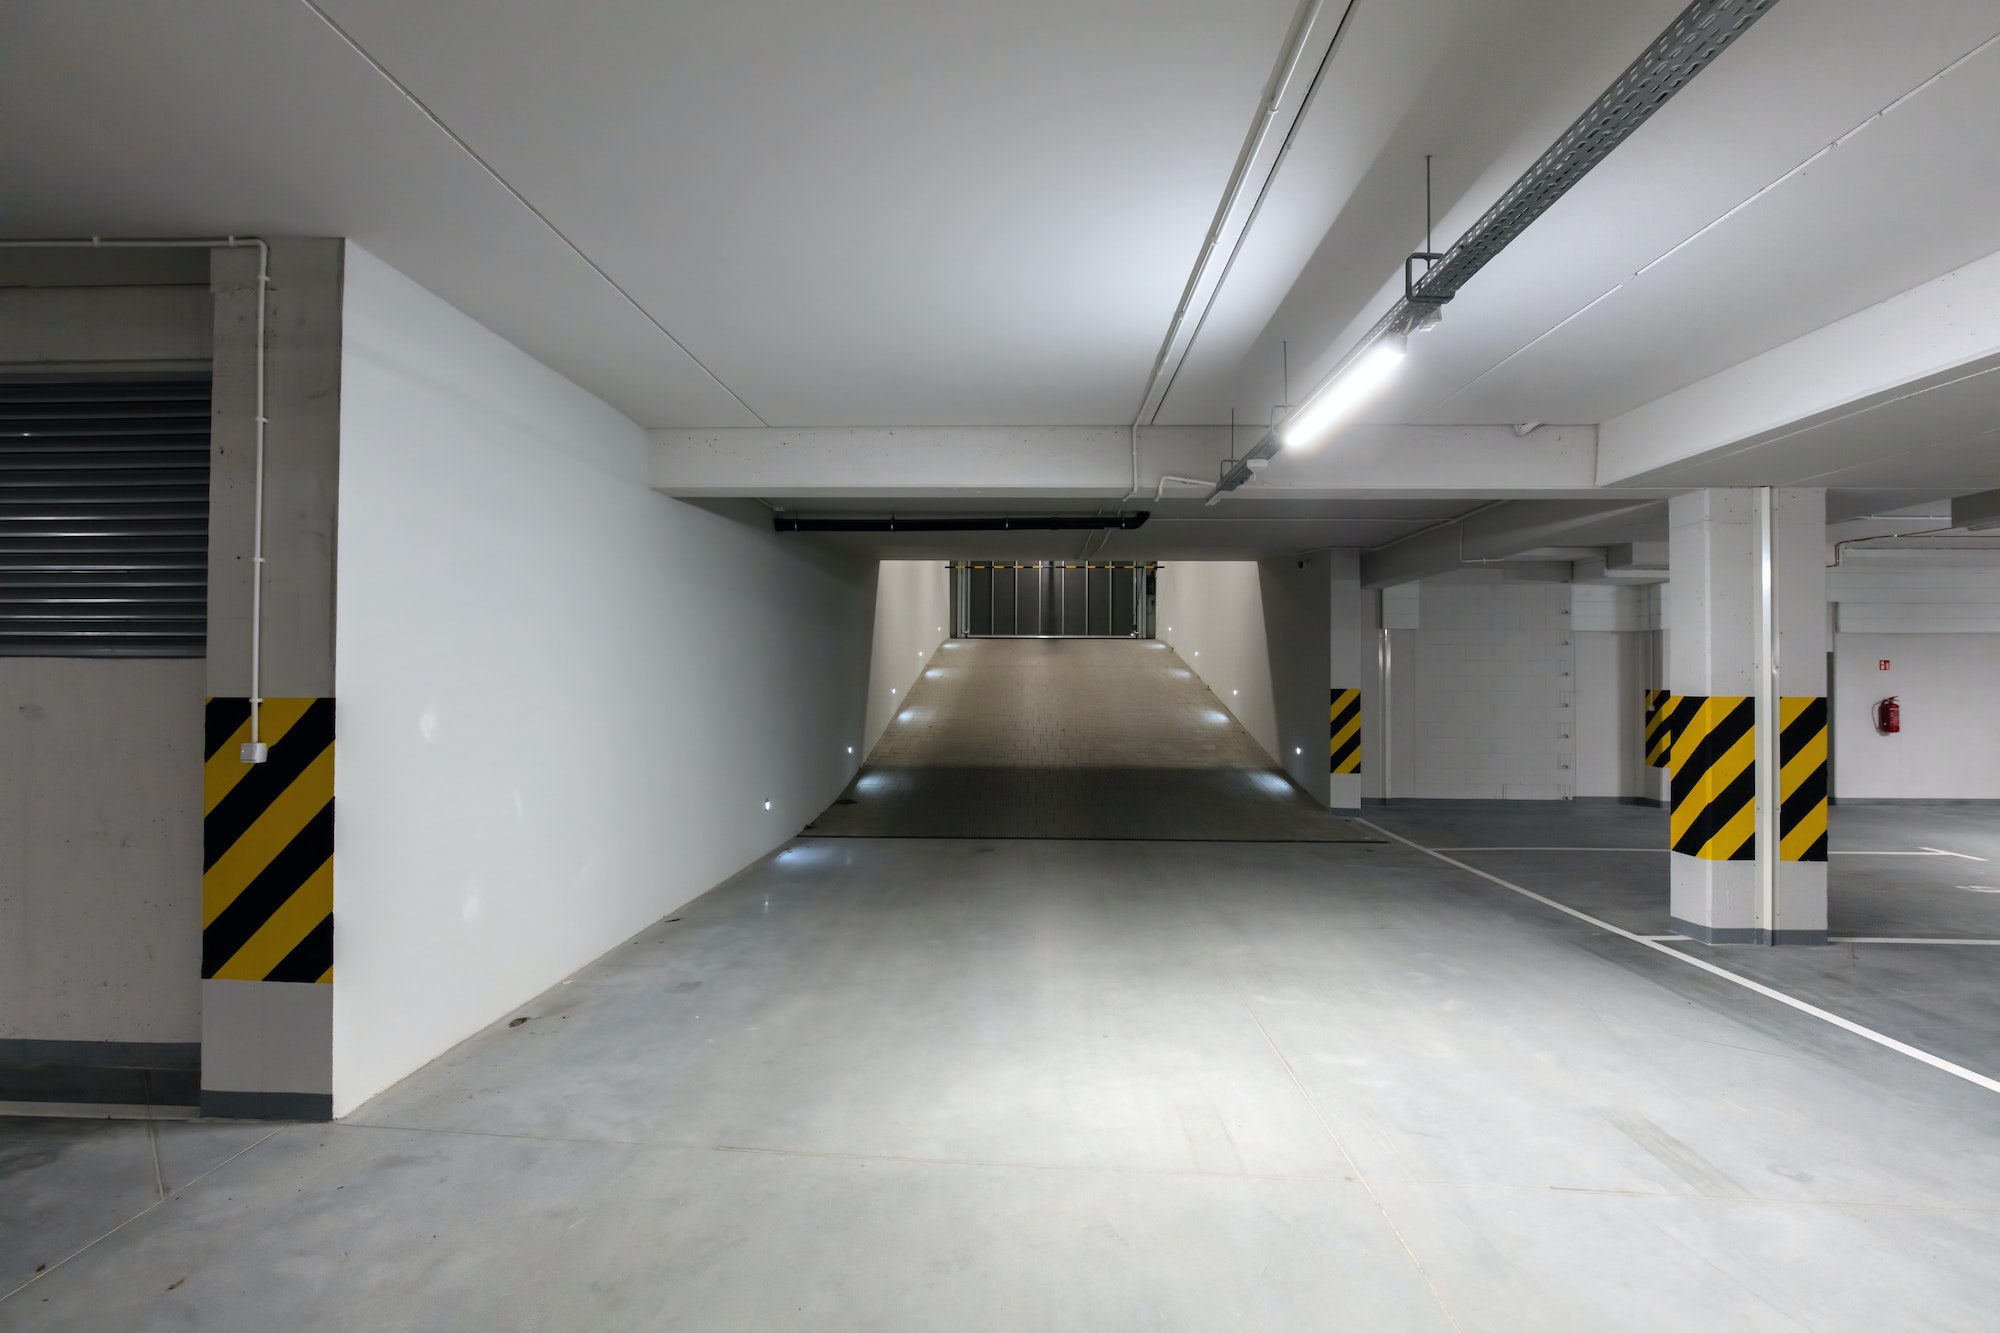 Underground empty parking garage. Gate and gateway